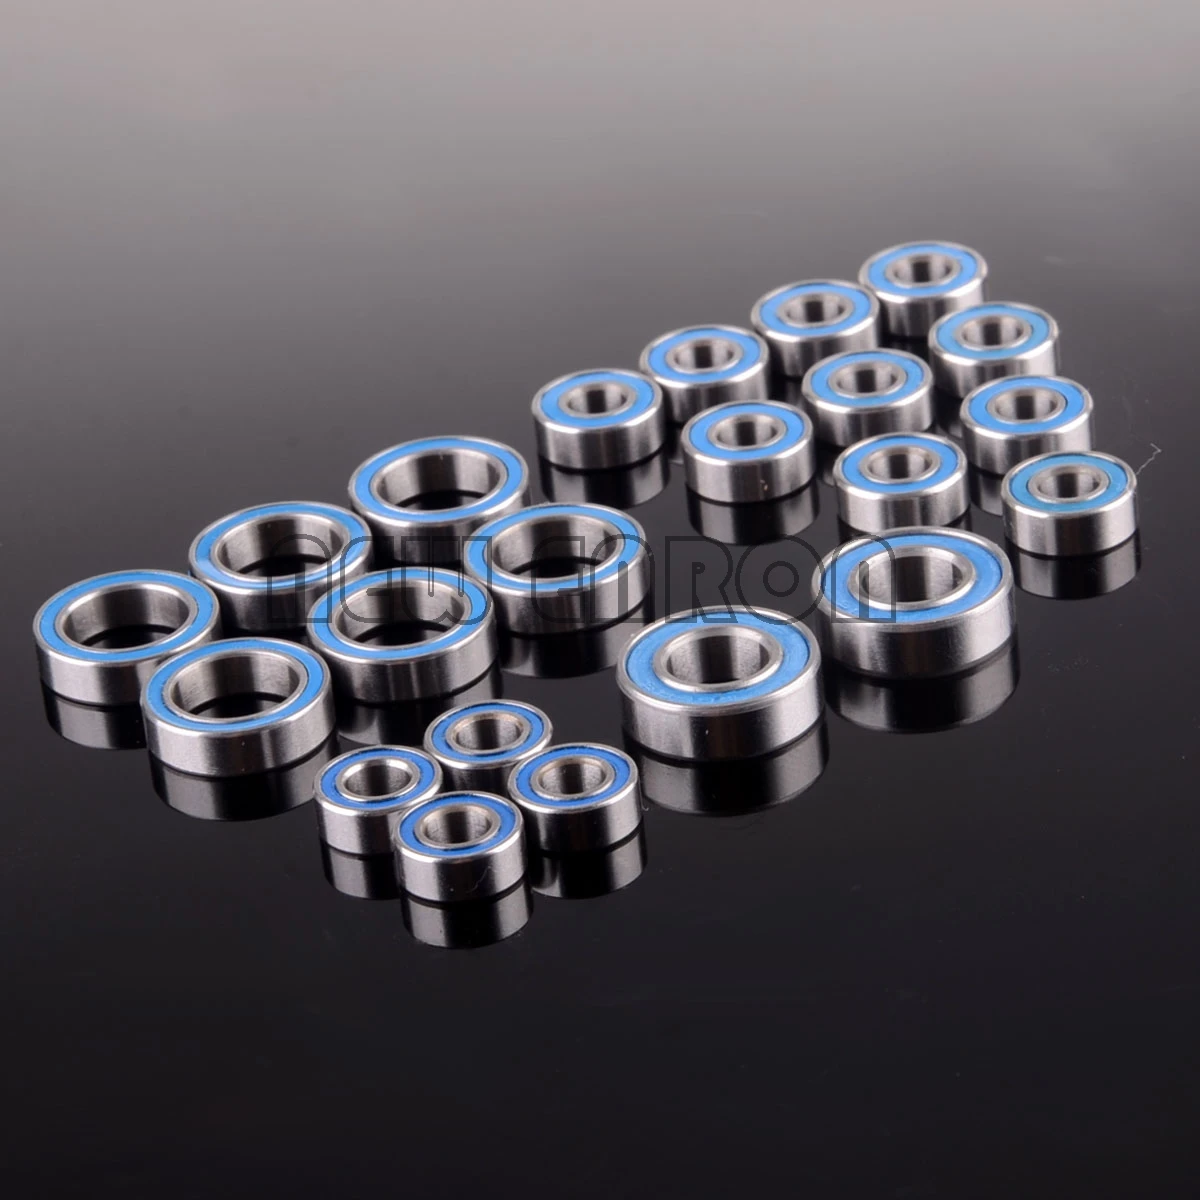 ENRON комплект шаровых подшипников(22 шт.) метрических синий резиновое запечатанное Для осевой AX10 SCX10 Динго Honcho подшипника-5